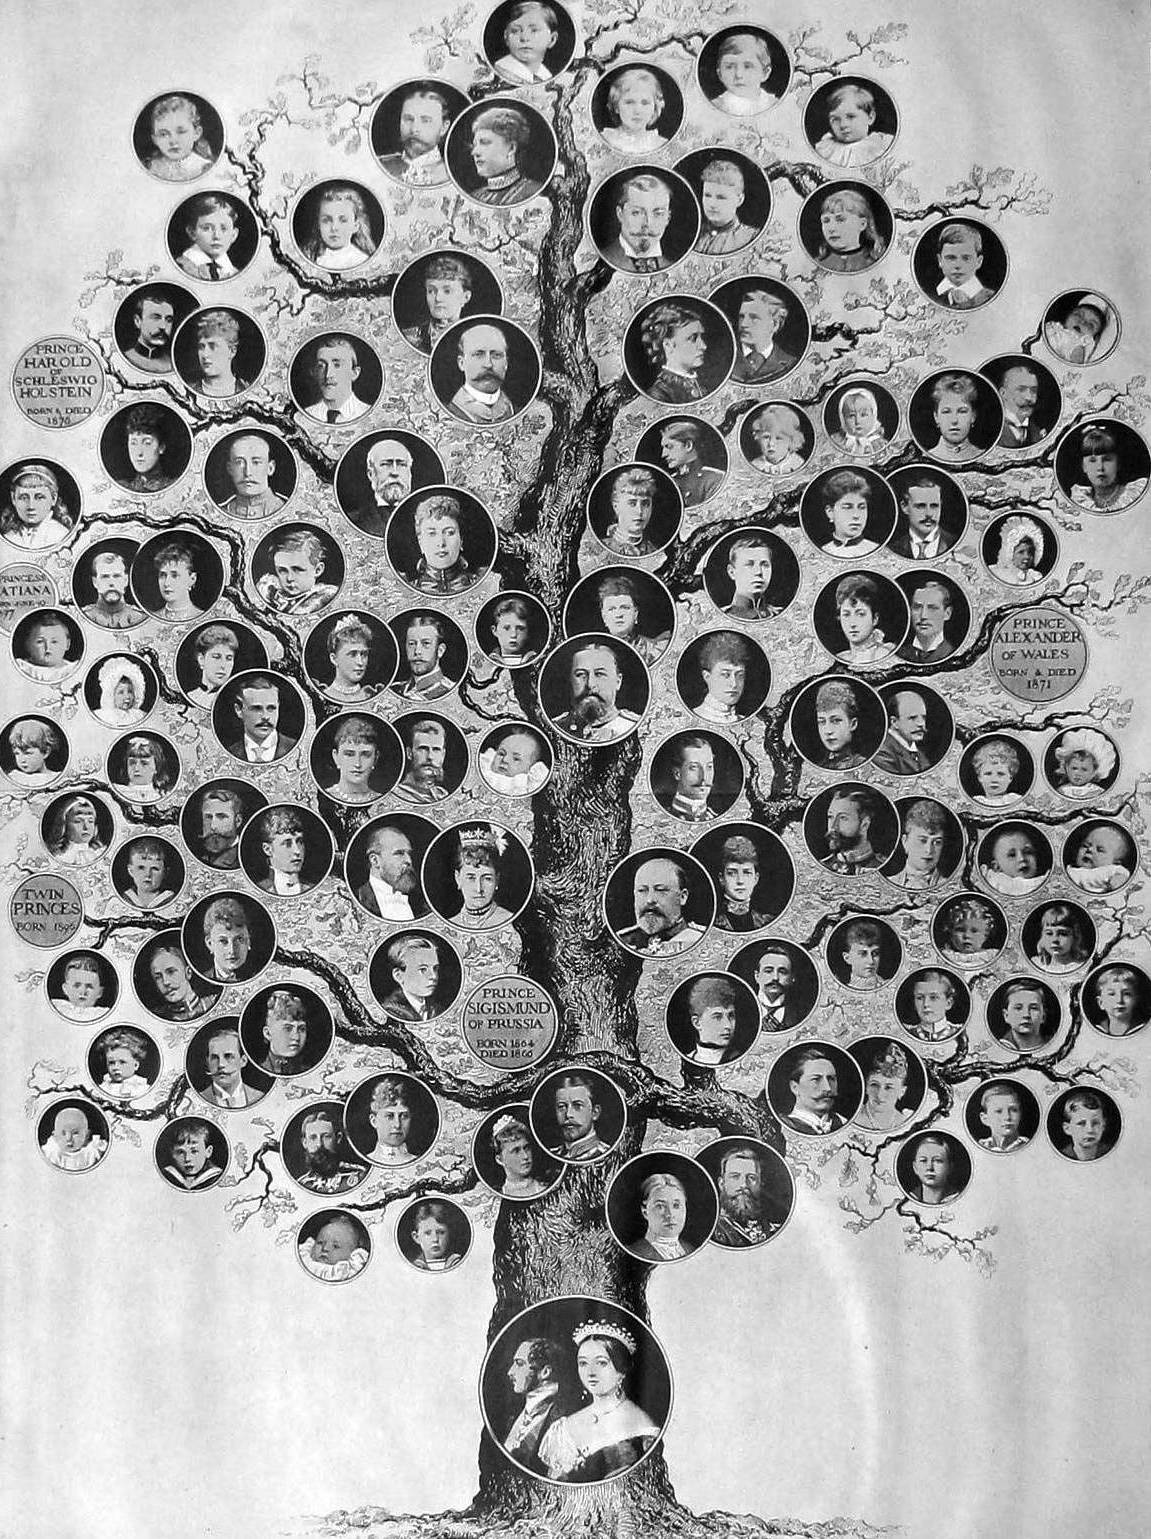 queen victoria ii family tree